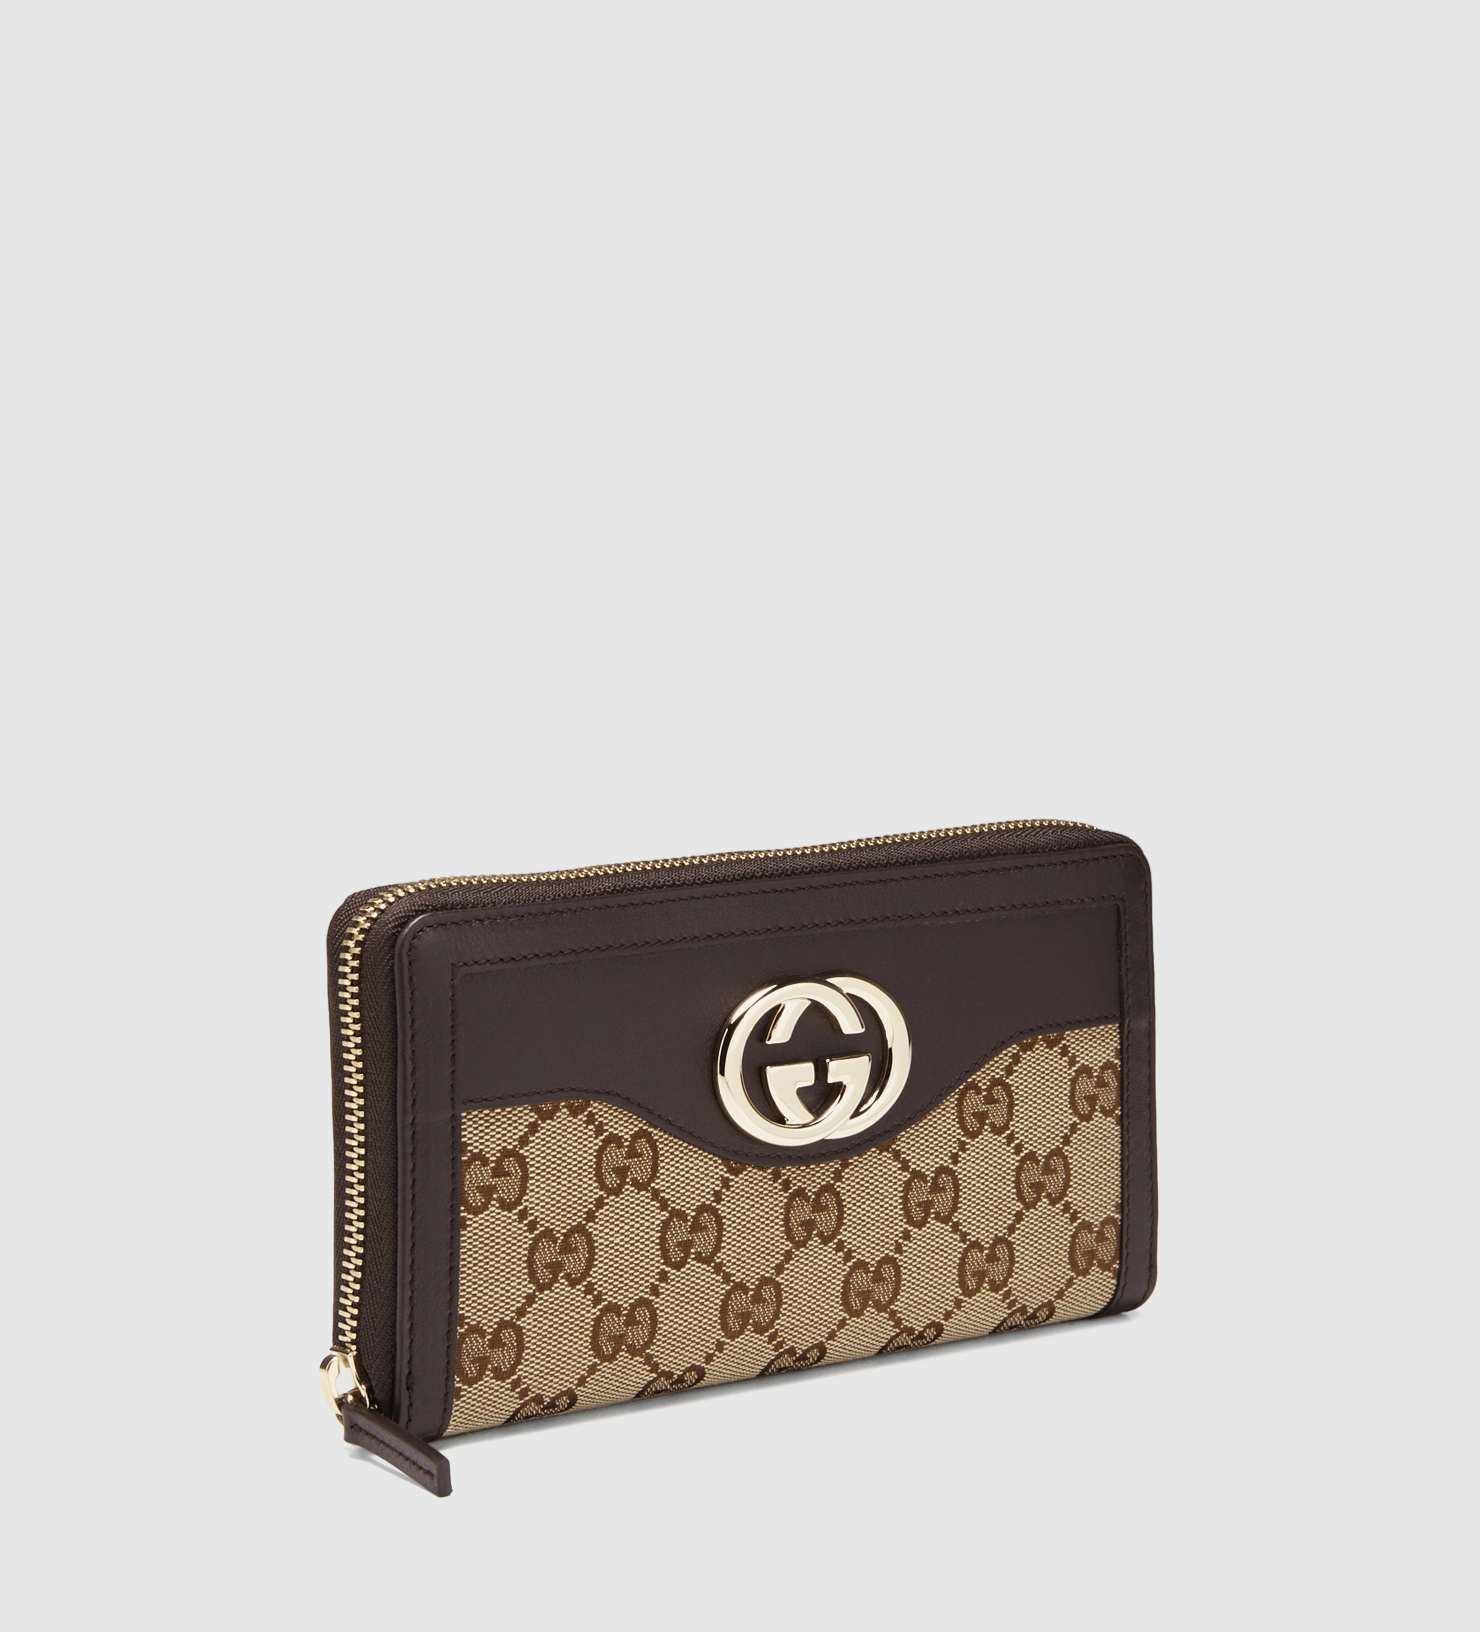 Lyst - Gucci Sukey Original Gg Canvas Zip Around Wallet in Brown